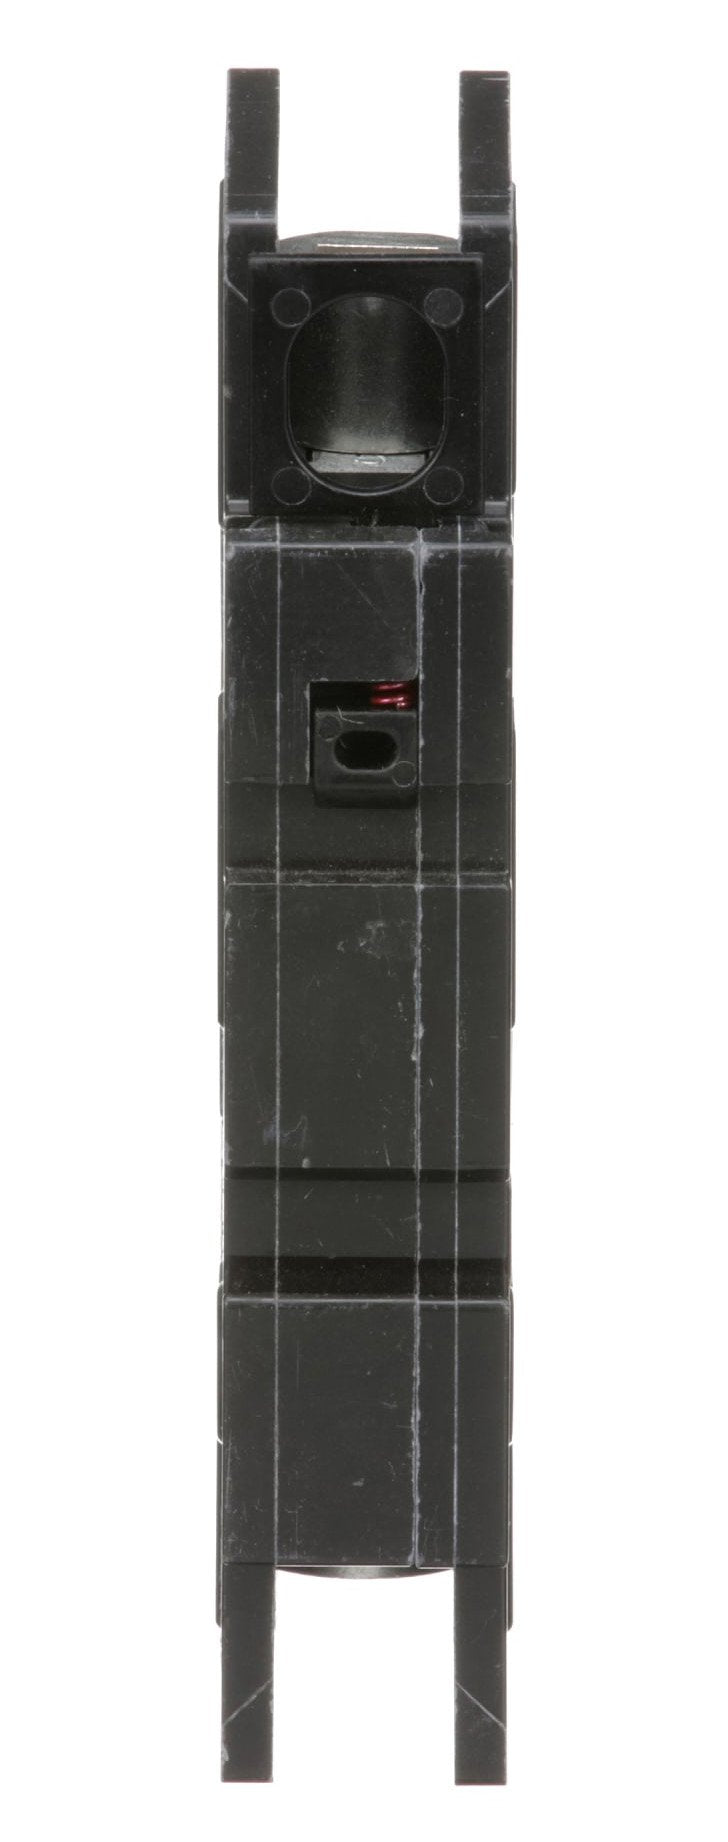 QOU150 - Square D - 50 Amp Circuit Breaker